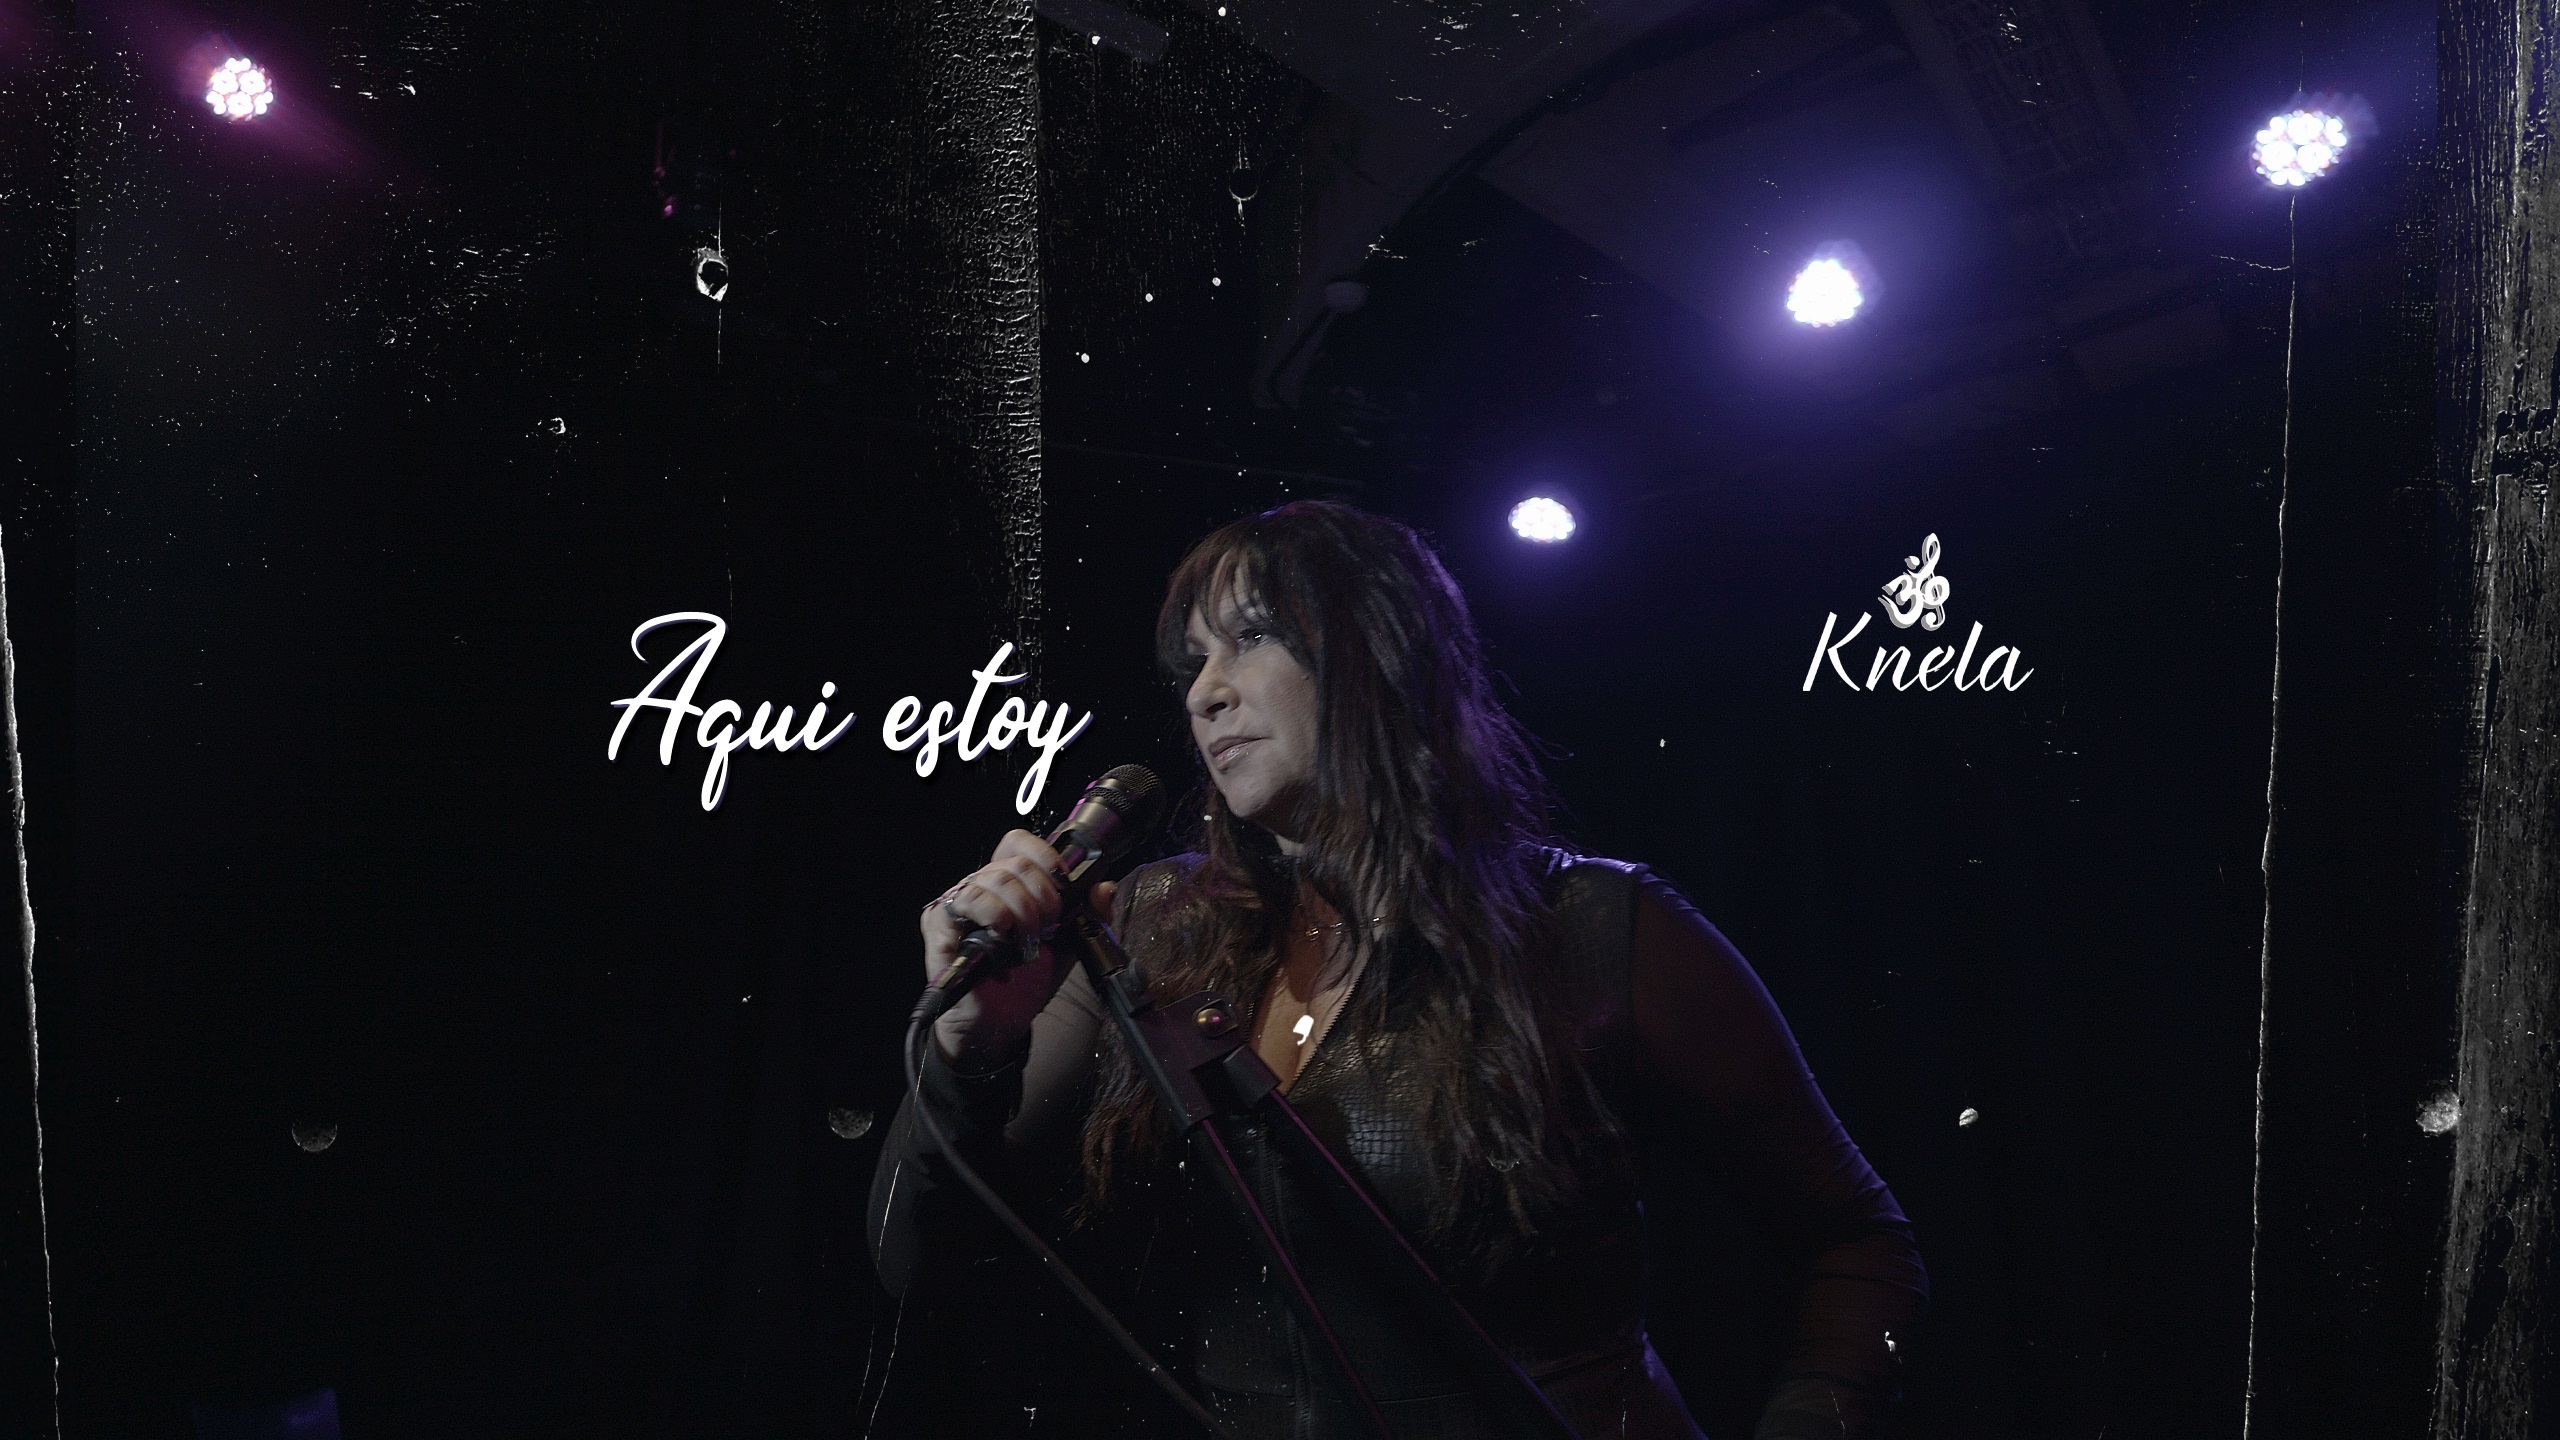 La cantante venezolana Knela presentó el VIDEO de su tercer sencillo promocional “Aquí estoy”